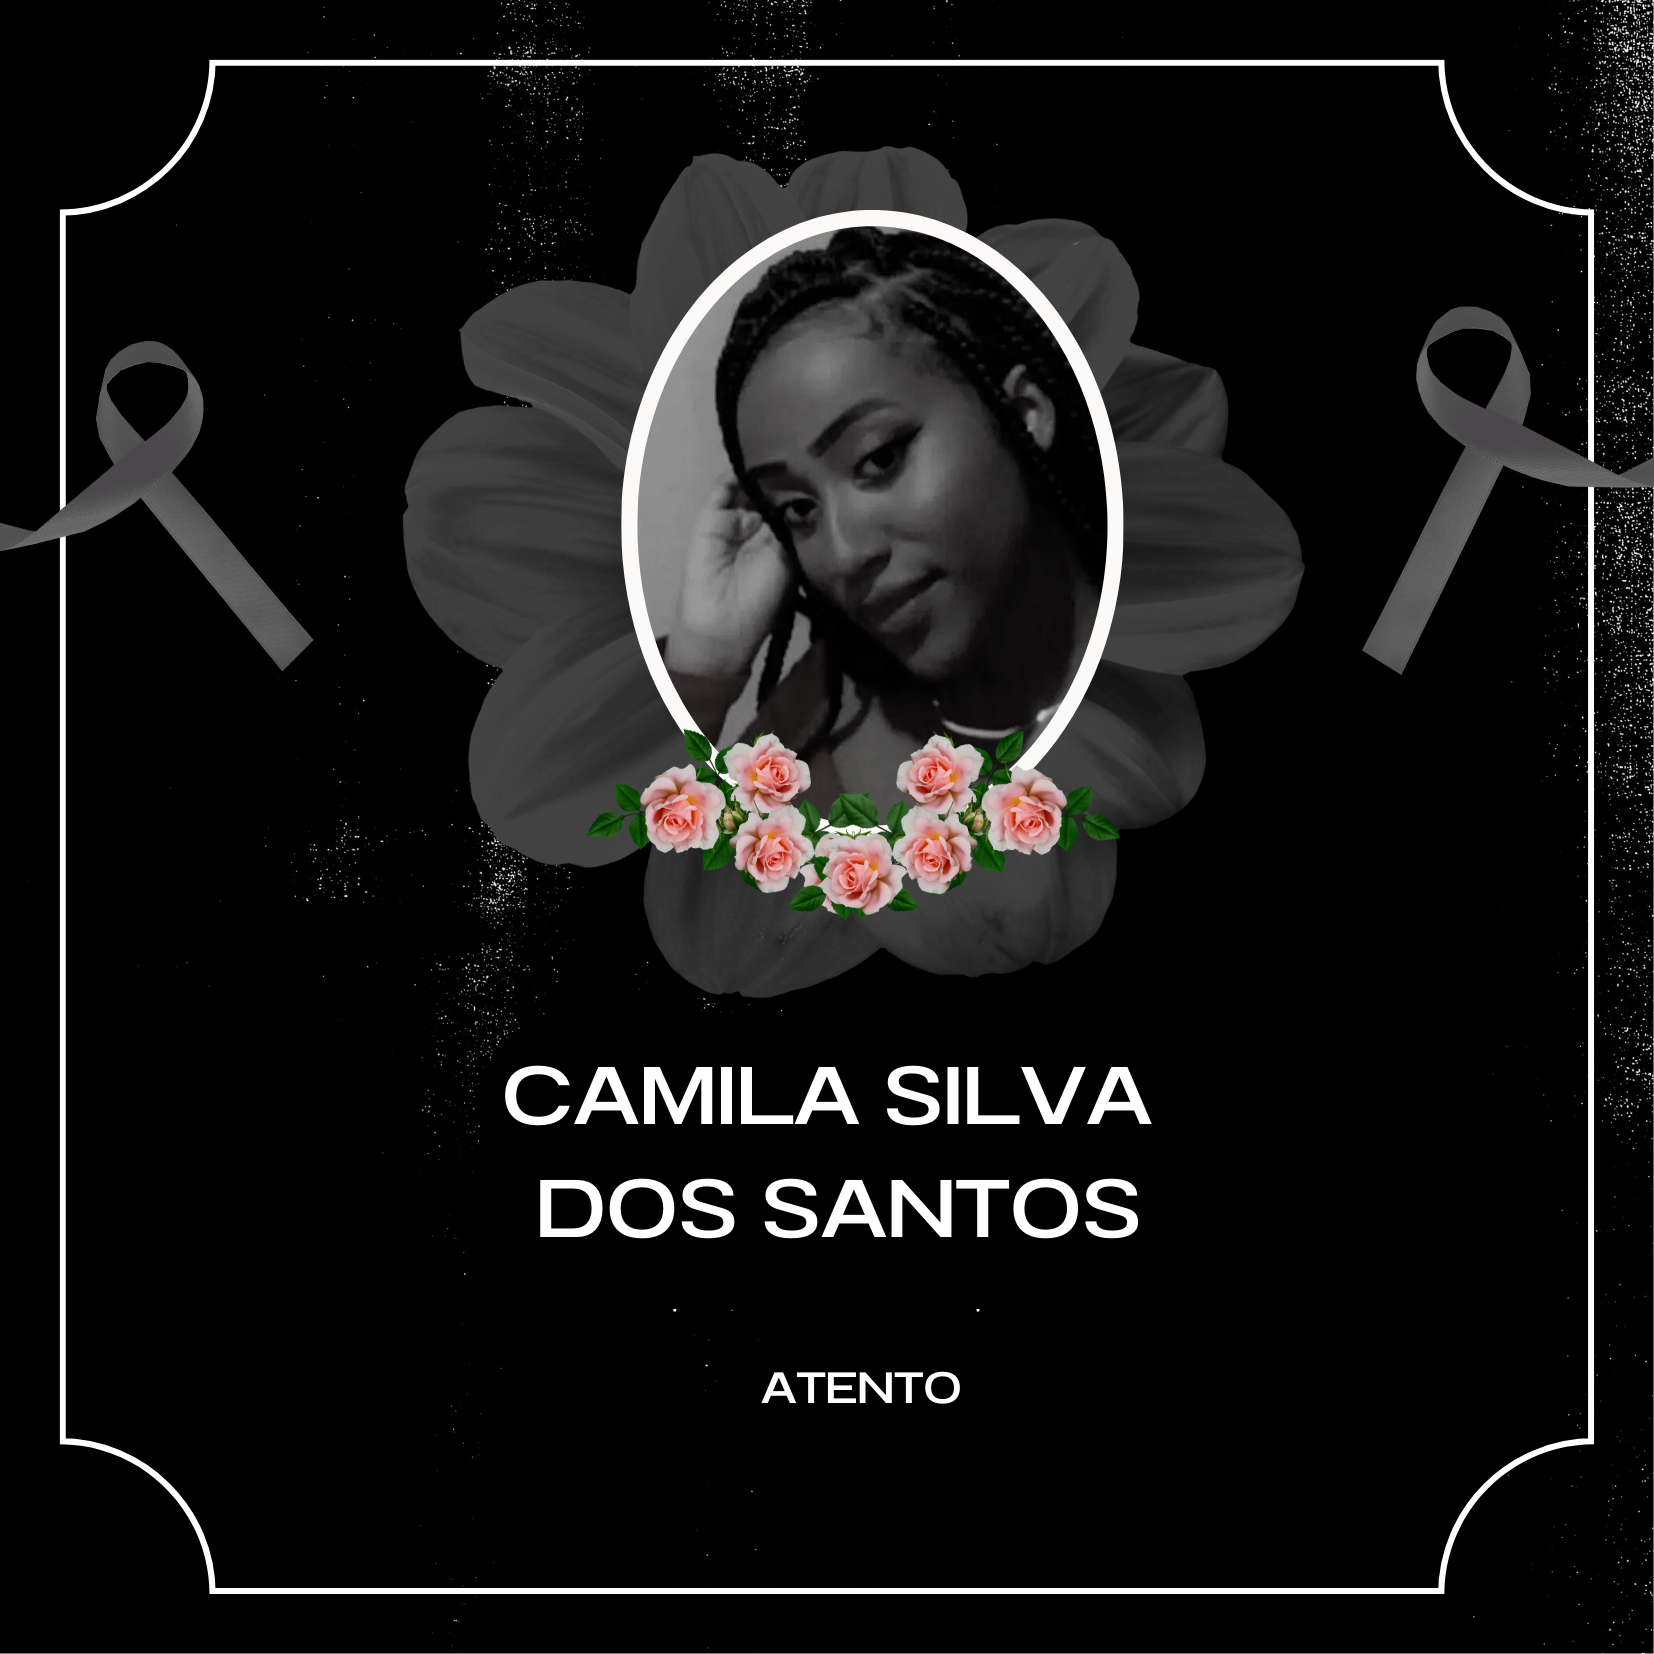 NOTA DE PESAR: Camila Silva - Atento 